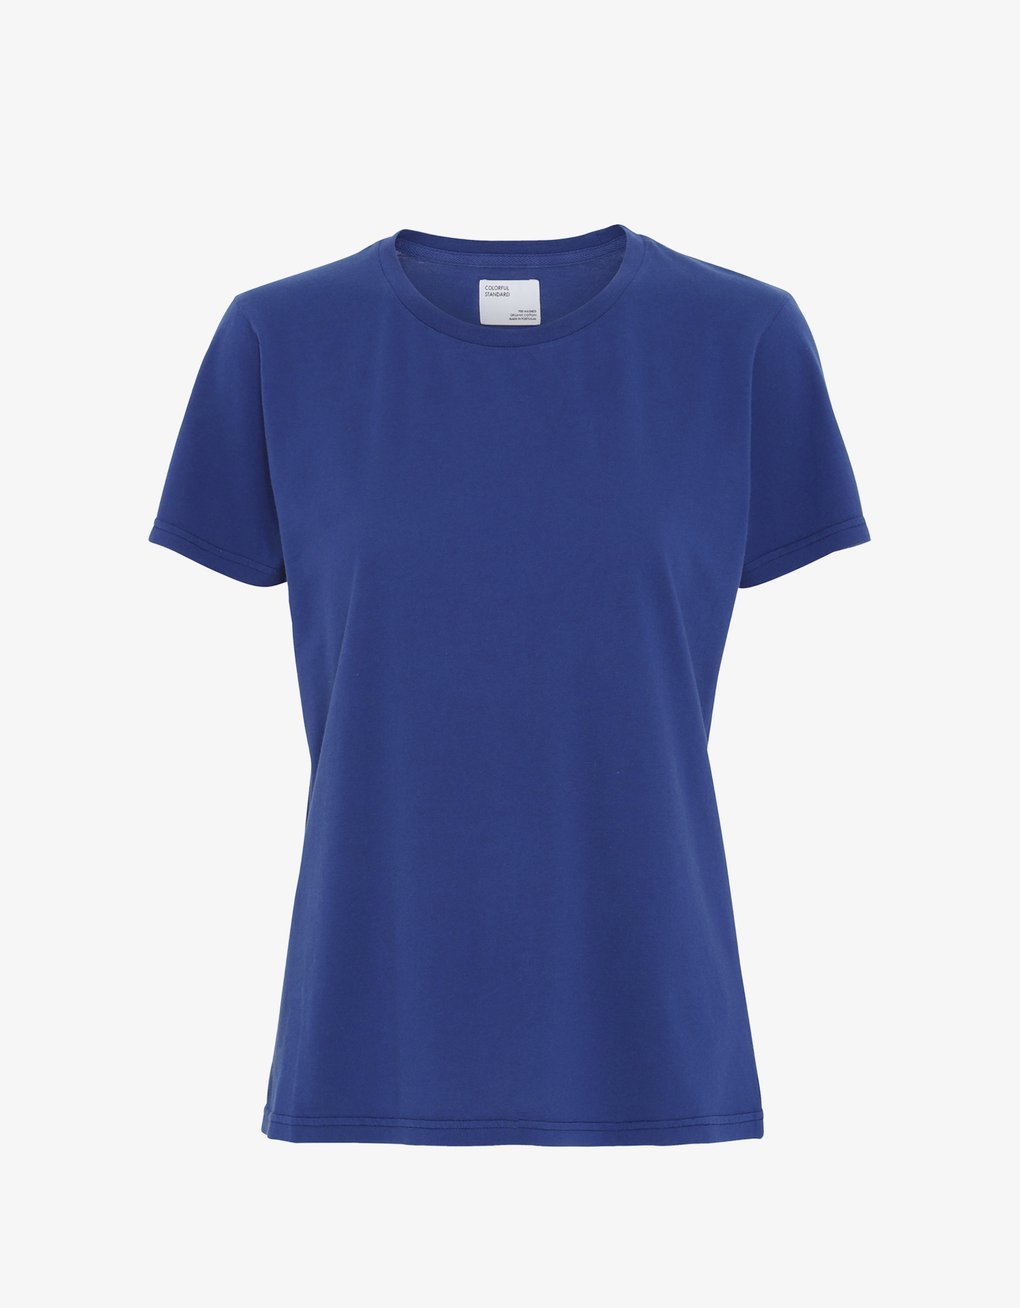 Camiseta Ligera de Mujer Orgánica Azul Royal - ECRU